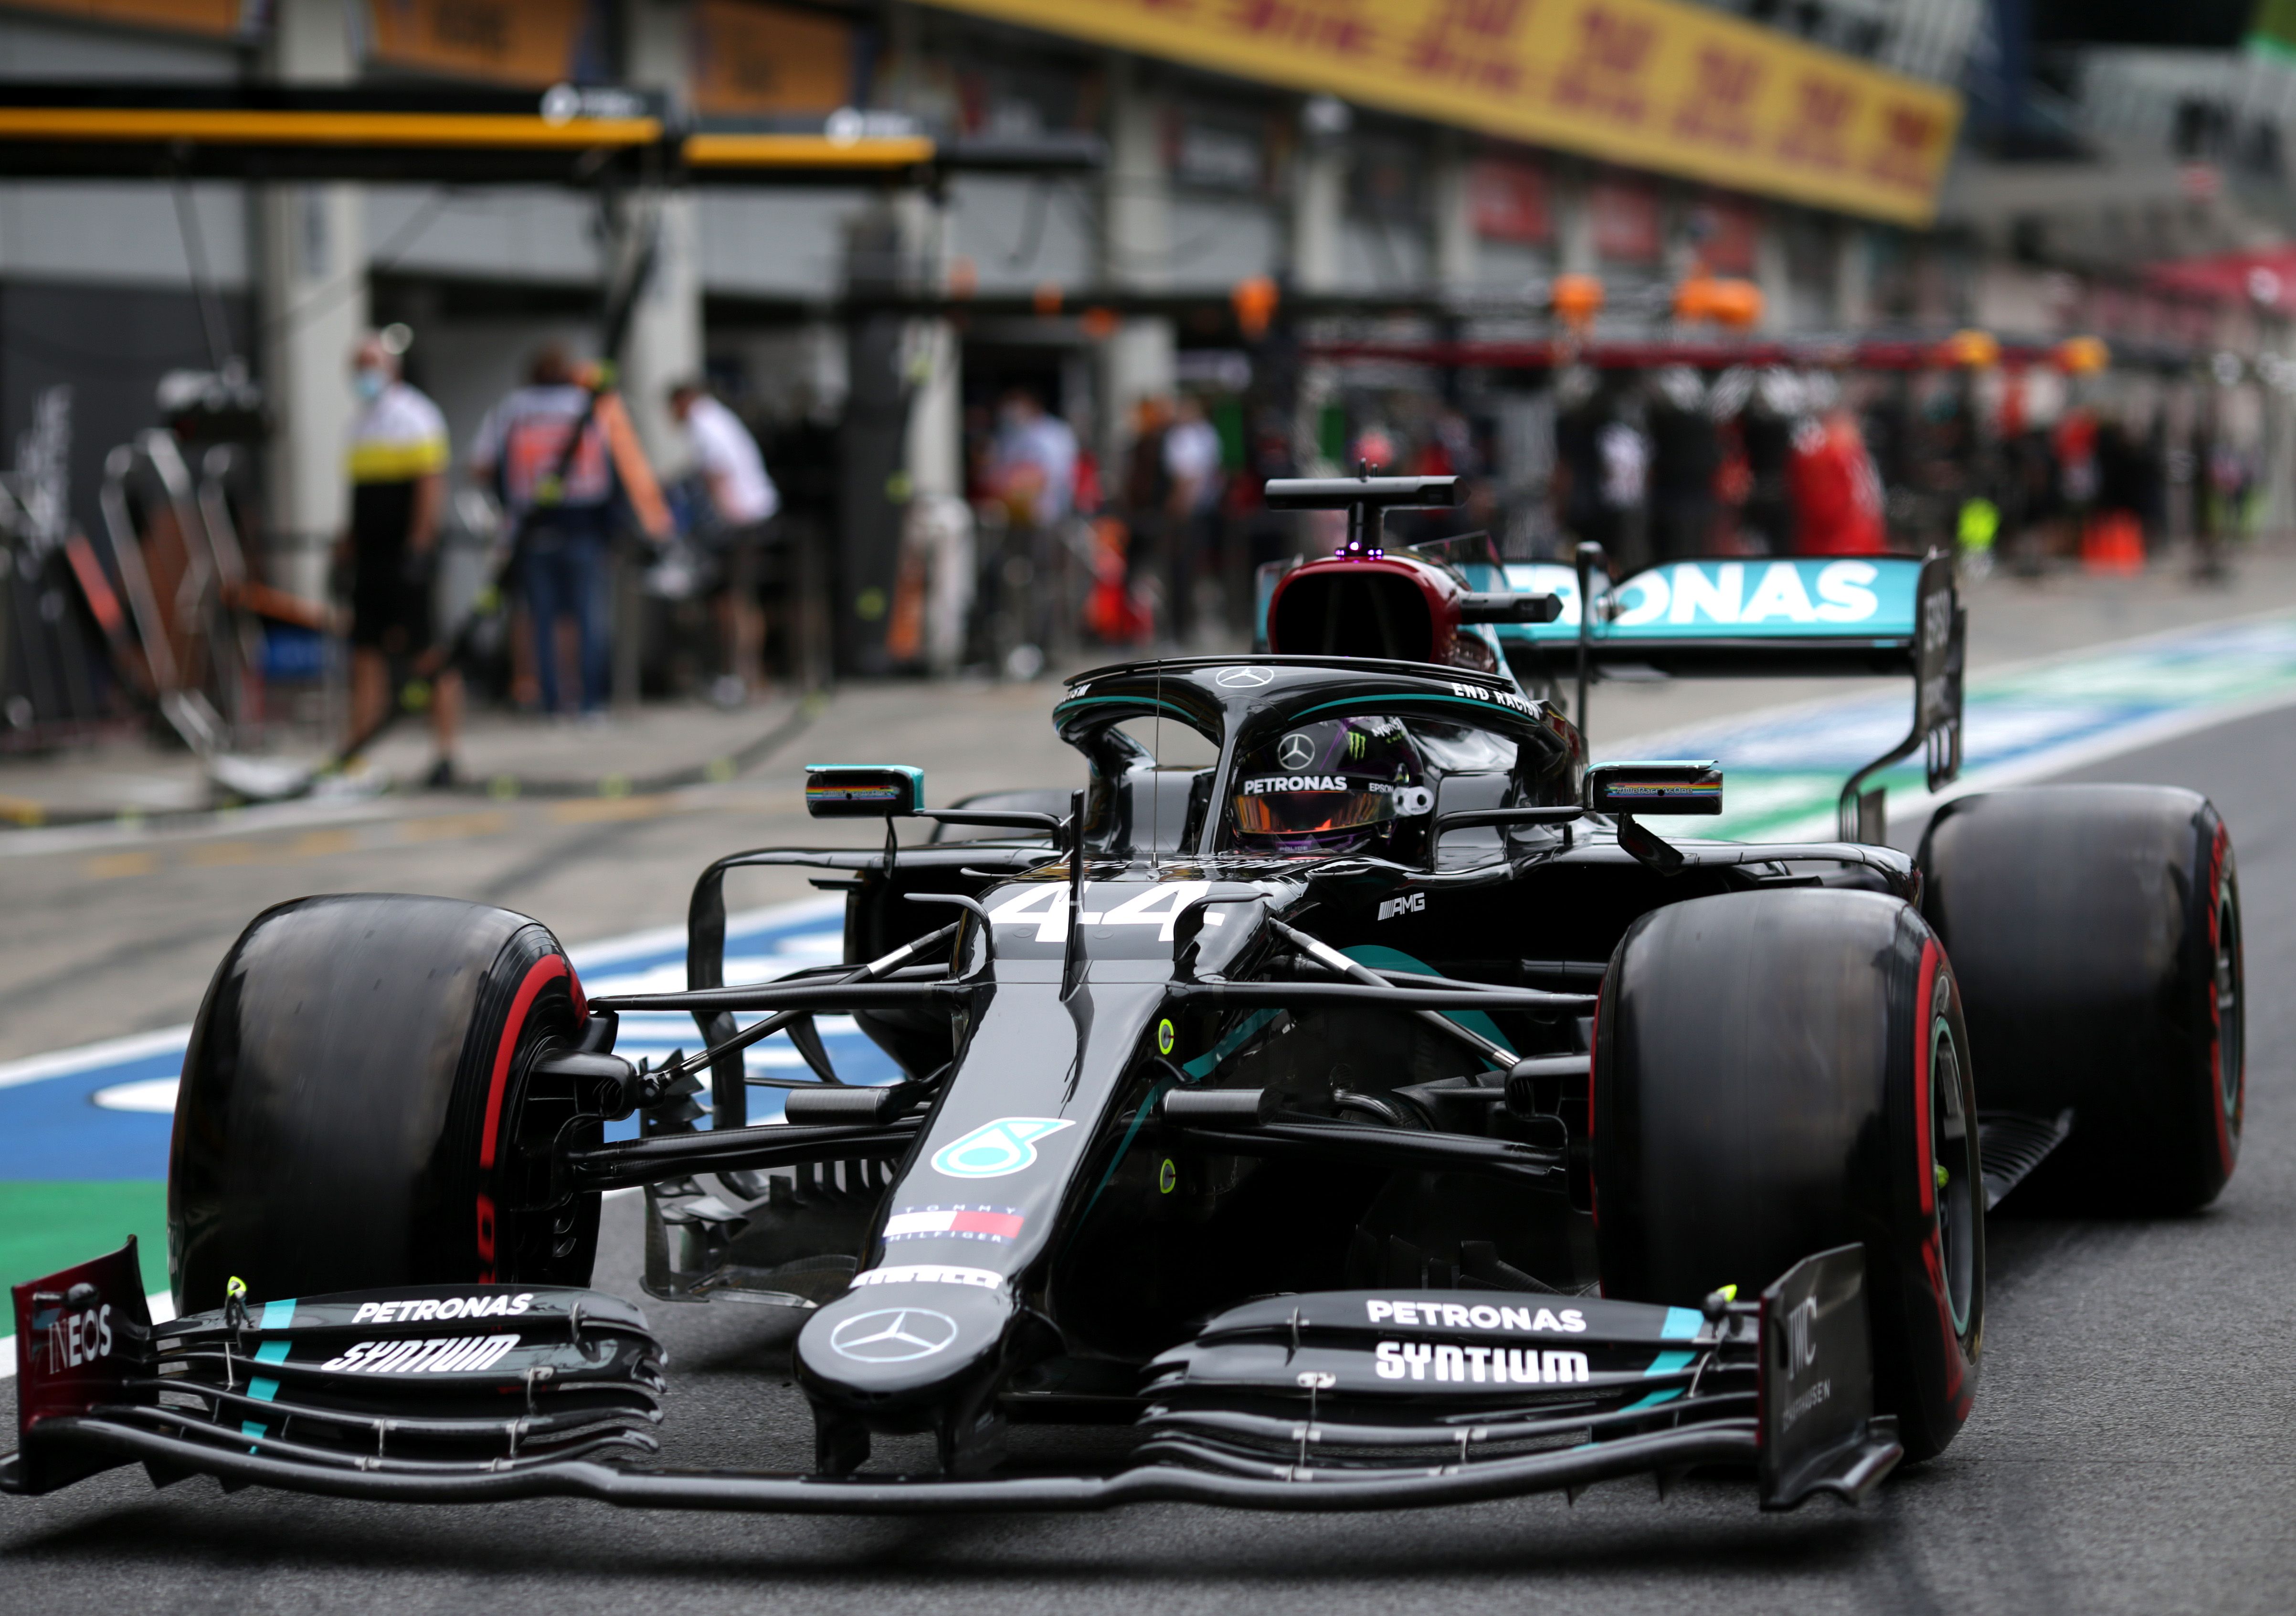 Get Lewis Hamilton Race Car 2020 Background